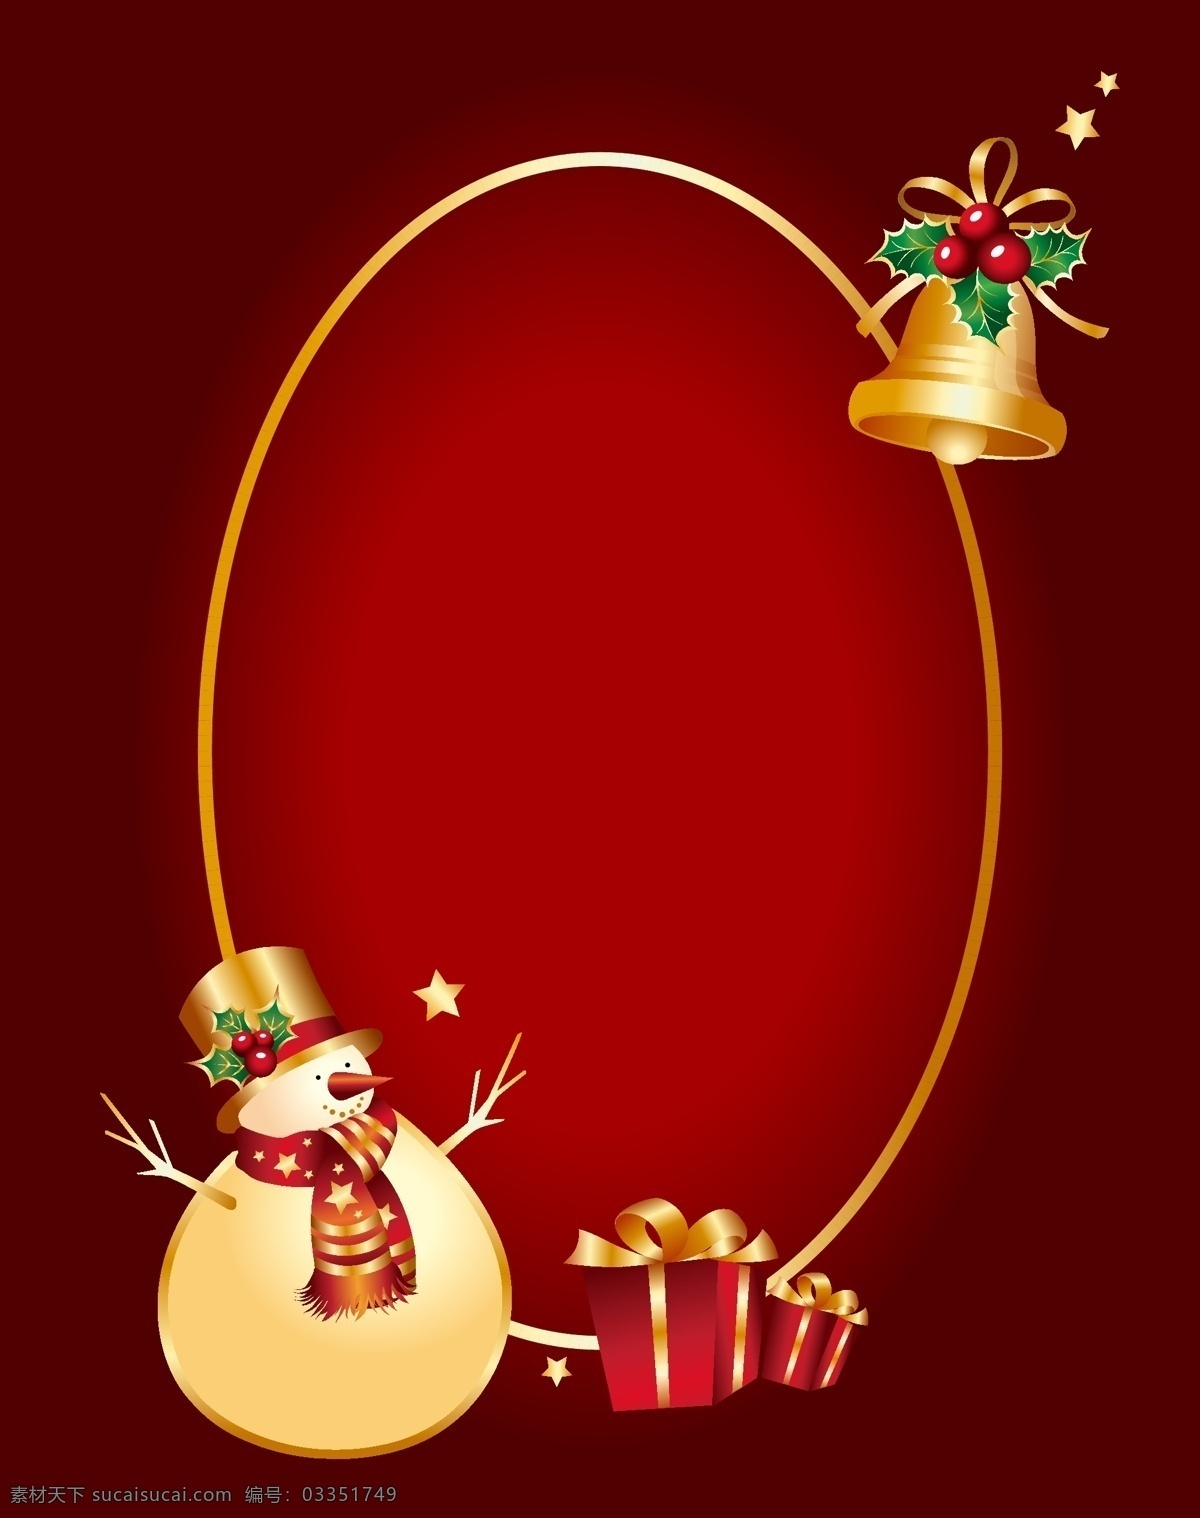 矢量 质感 雪人 礼物 圣诞节 背景 红色 椭圆边框 铃铛 海报 卡通 童趣 手绘